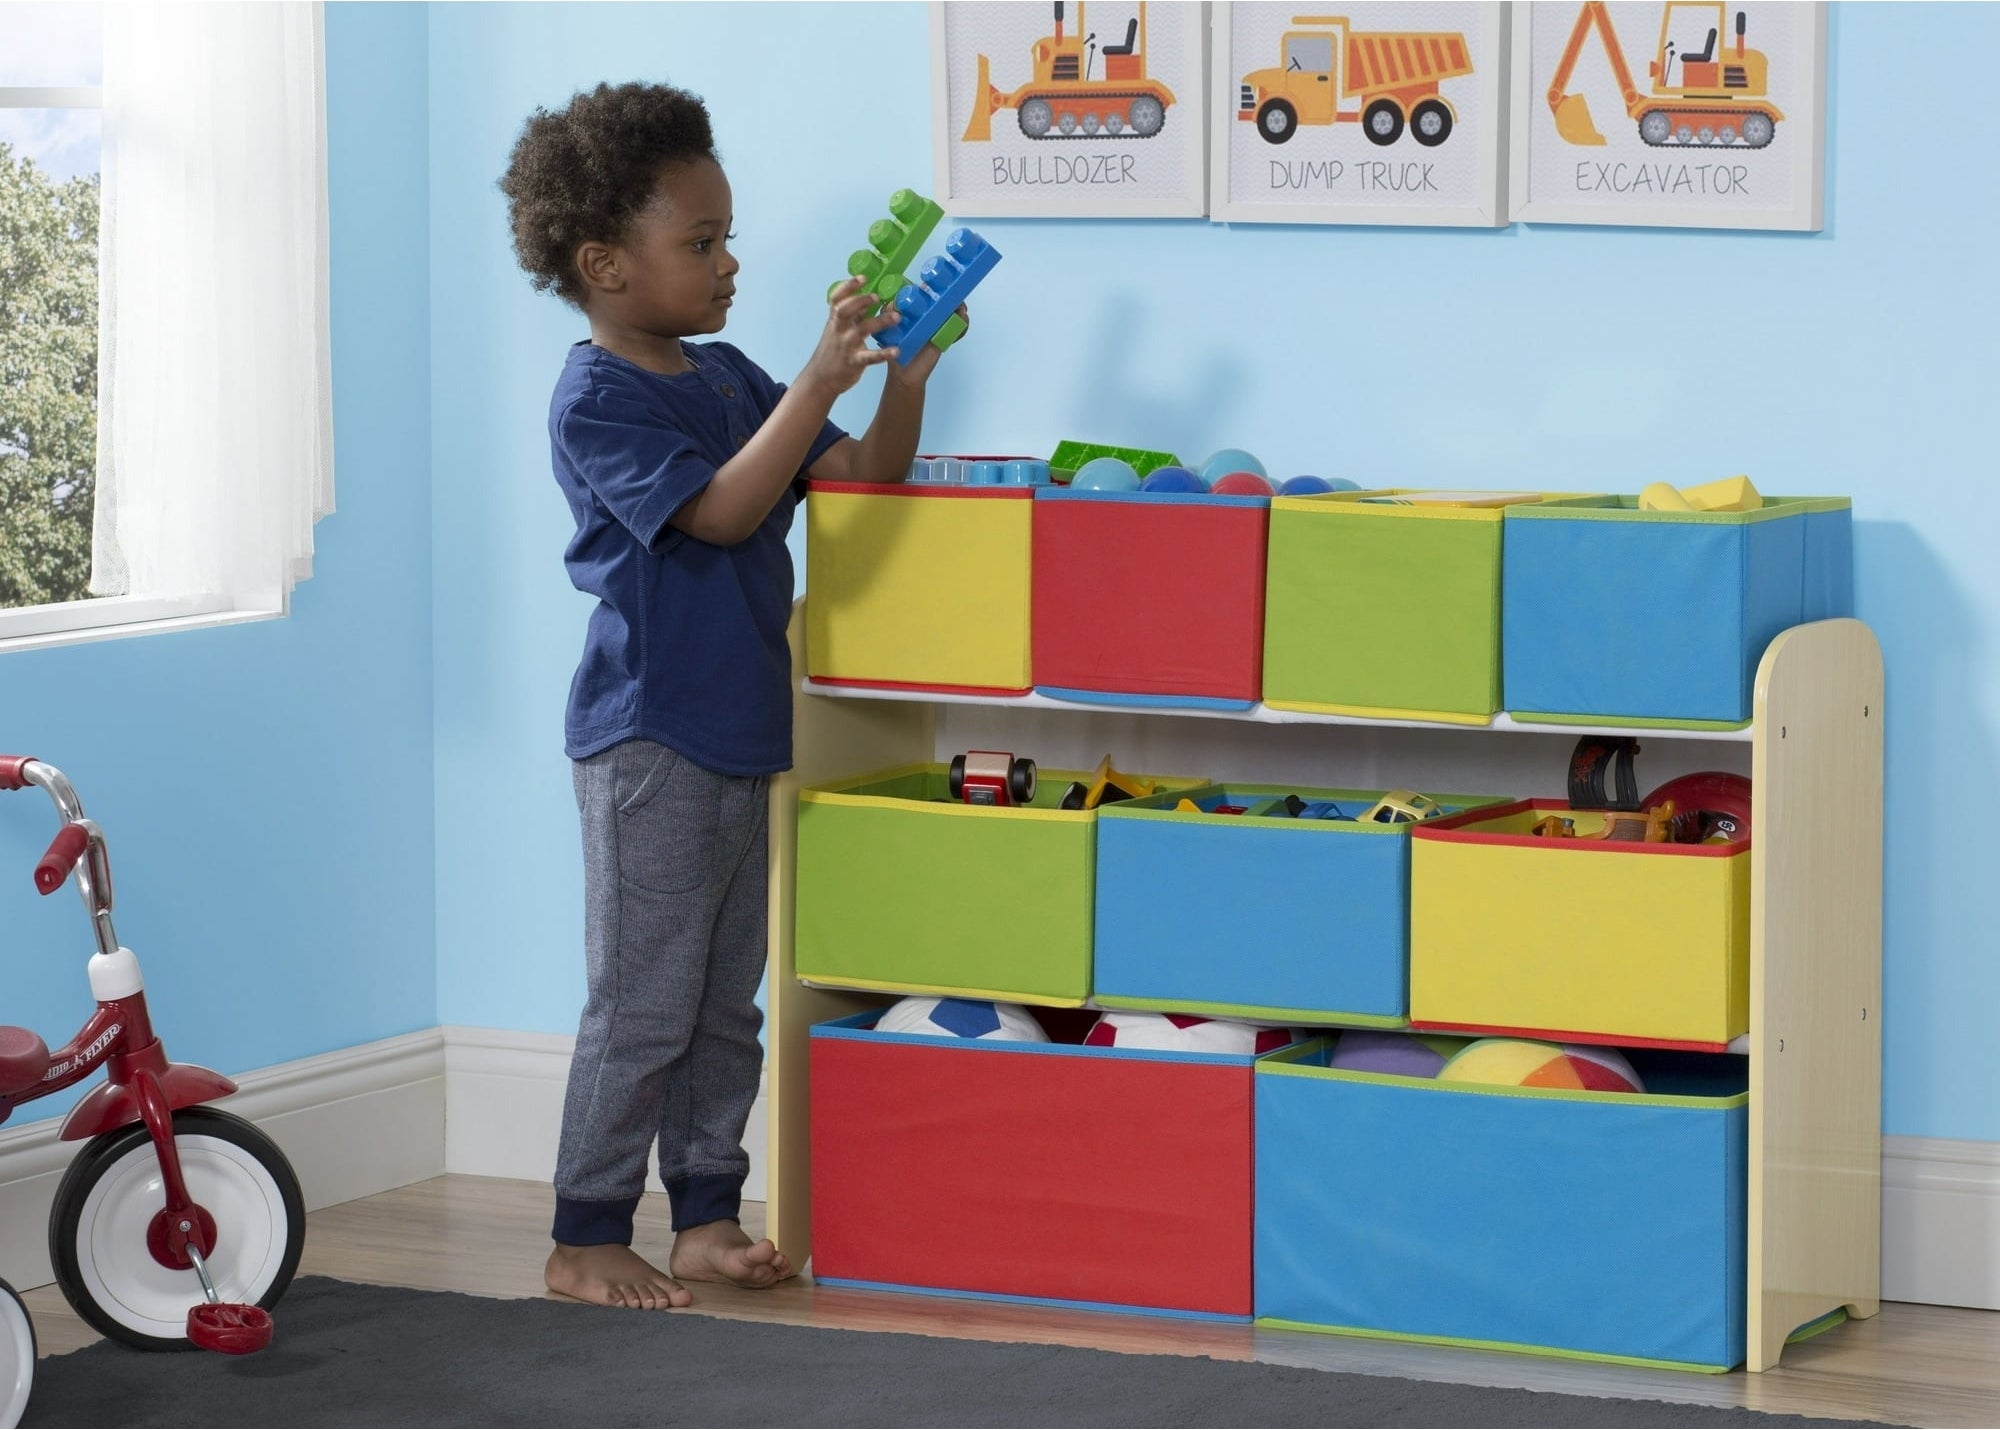 A child plays near a toy organizer